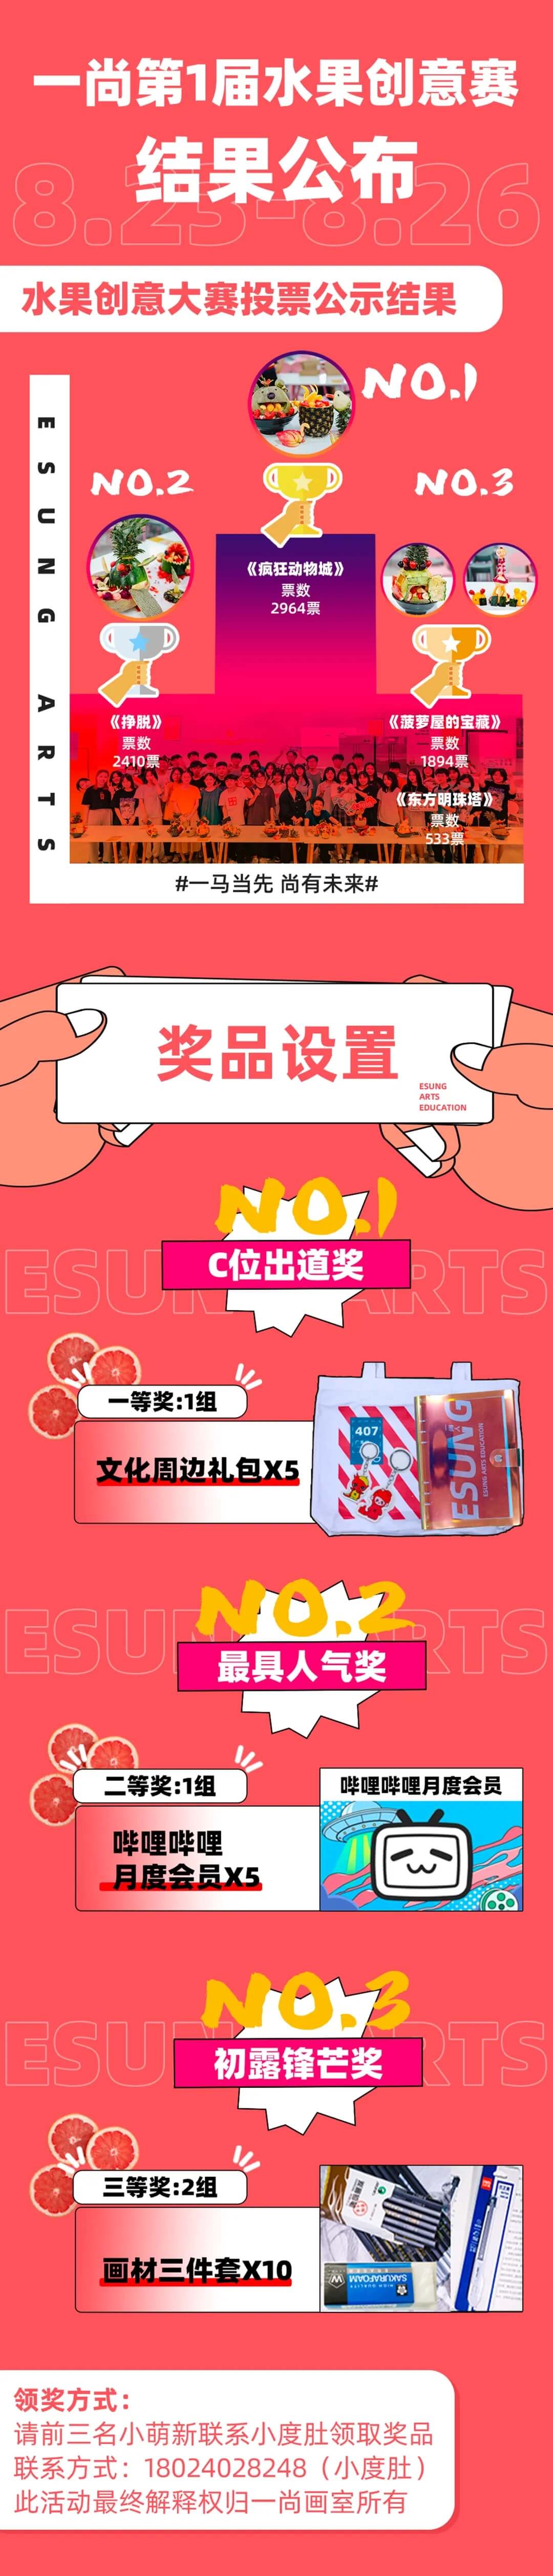 广州画室第一届水果创意赛投票大比拼结果公示！1